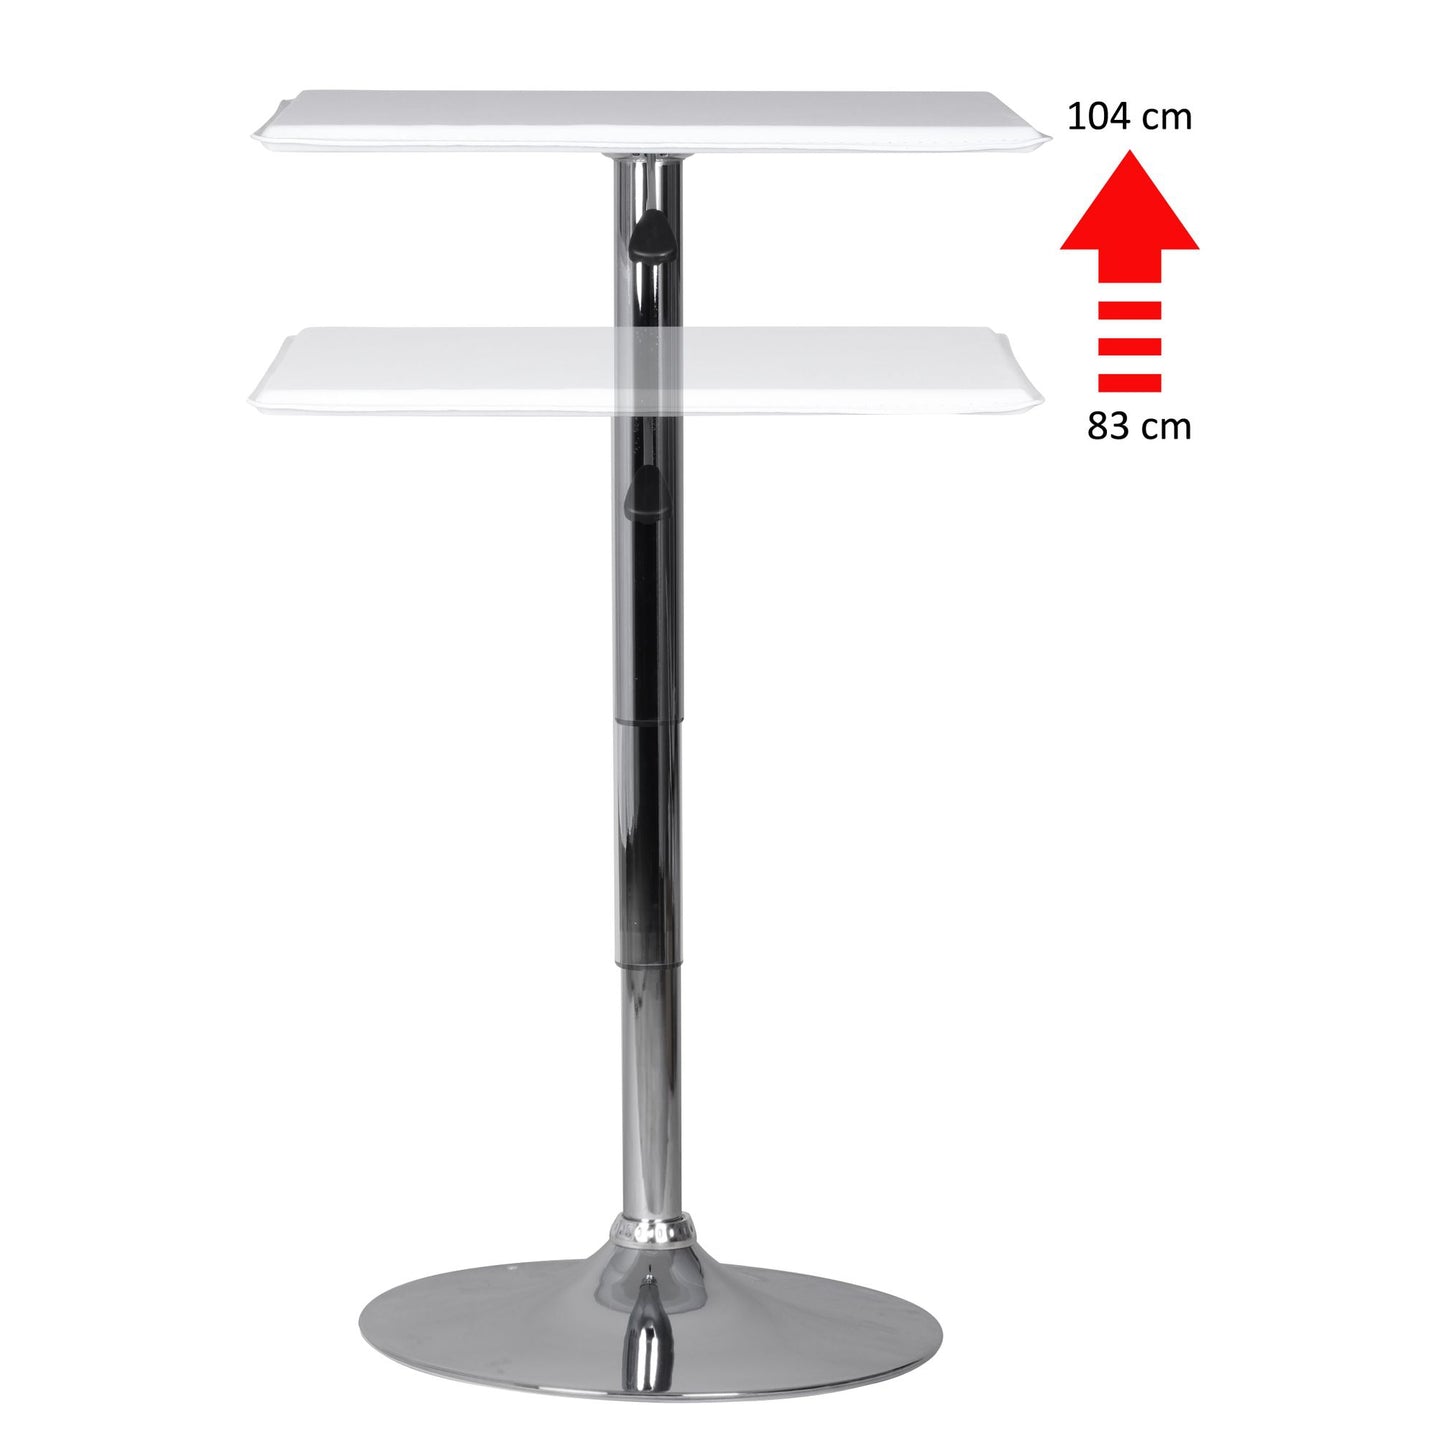 Table haute Raymond de Nancy - Table de bistro - 60 x 60 cm - Aspect cuir - Blanc - Chrome - Argent - Carré